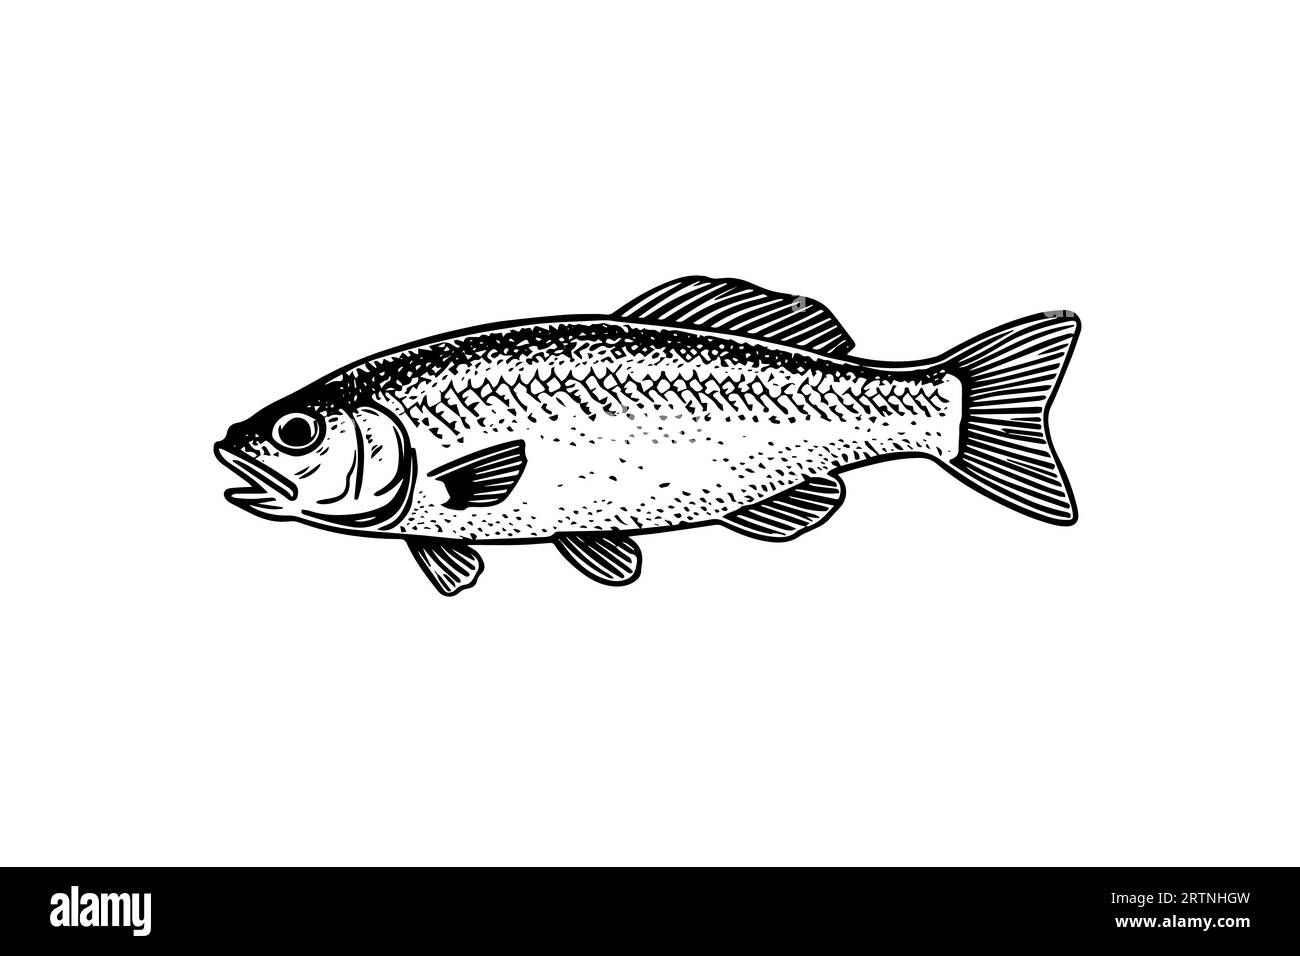 Roach dessiné à la main gravure poisson isolé sur fond blanc. Illustration d'esquisse vectorielle. Illustration de Vecteur